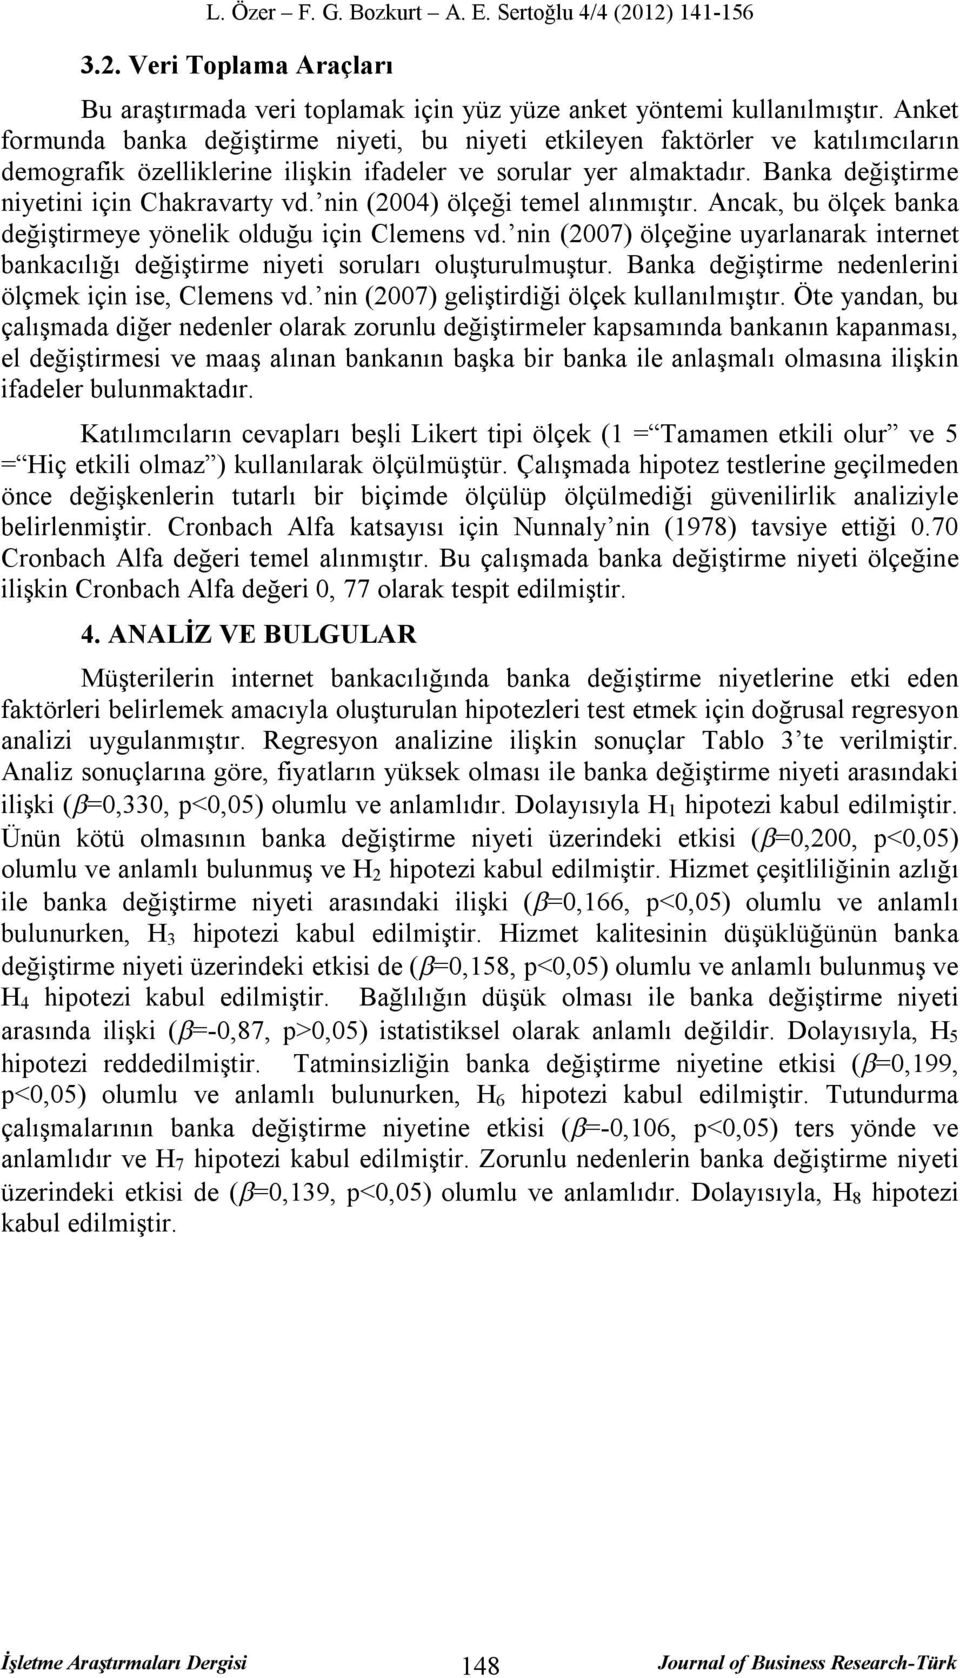 Banka değiştirme niyetini için Chakravarty vd. nin (2004) ölçeği temel alınmıştır. Ancak, bu ölçek banka değiştirmeye yönelik olduğu için Clemens vd.